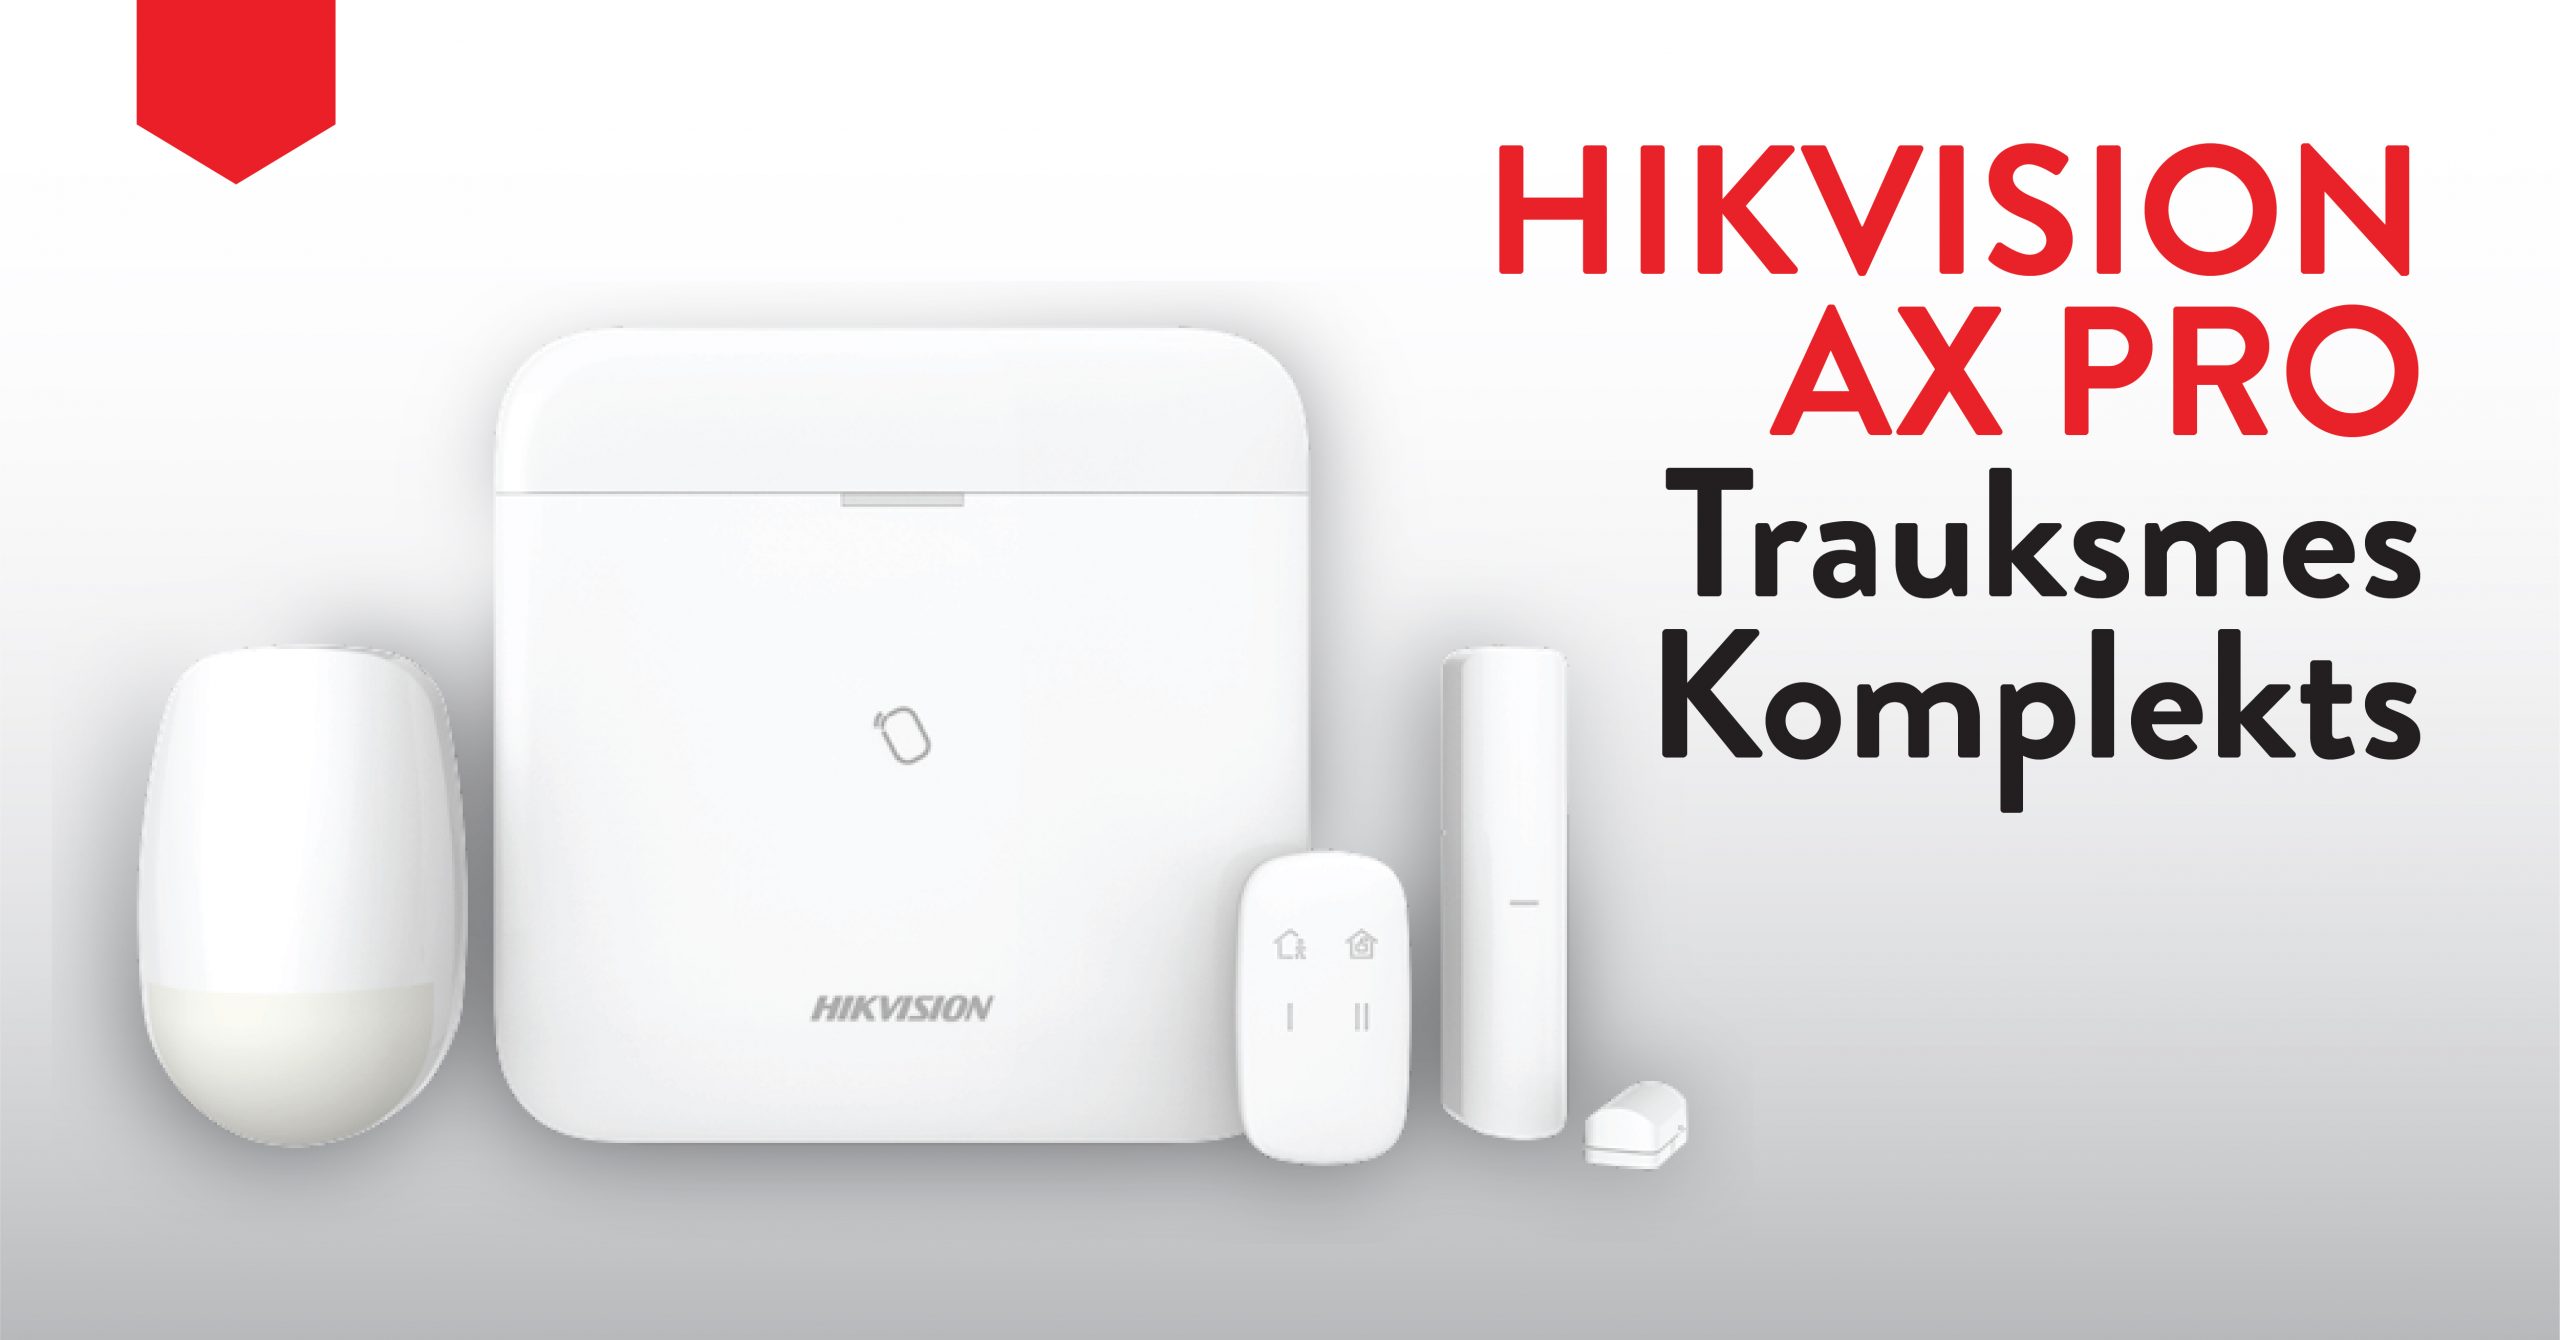 InRex piedavajums Hikvision AX PRO trauksmes komplekts